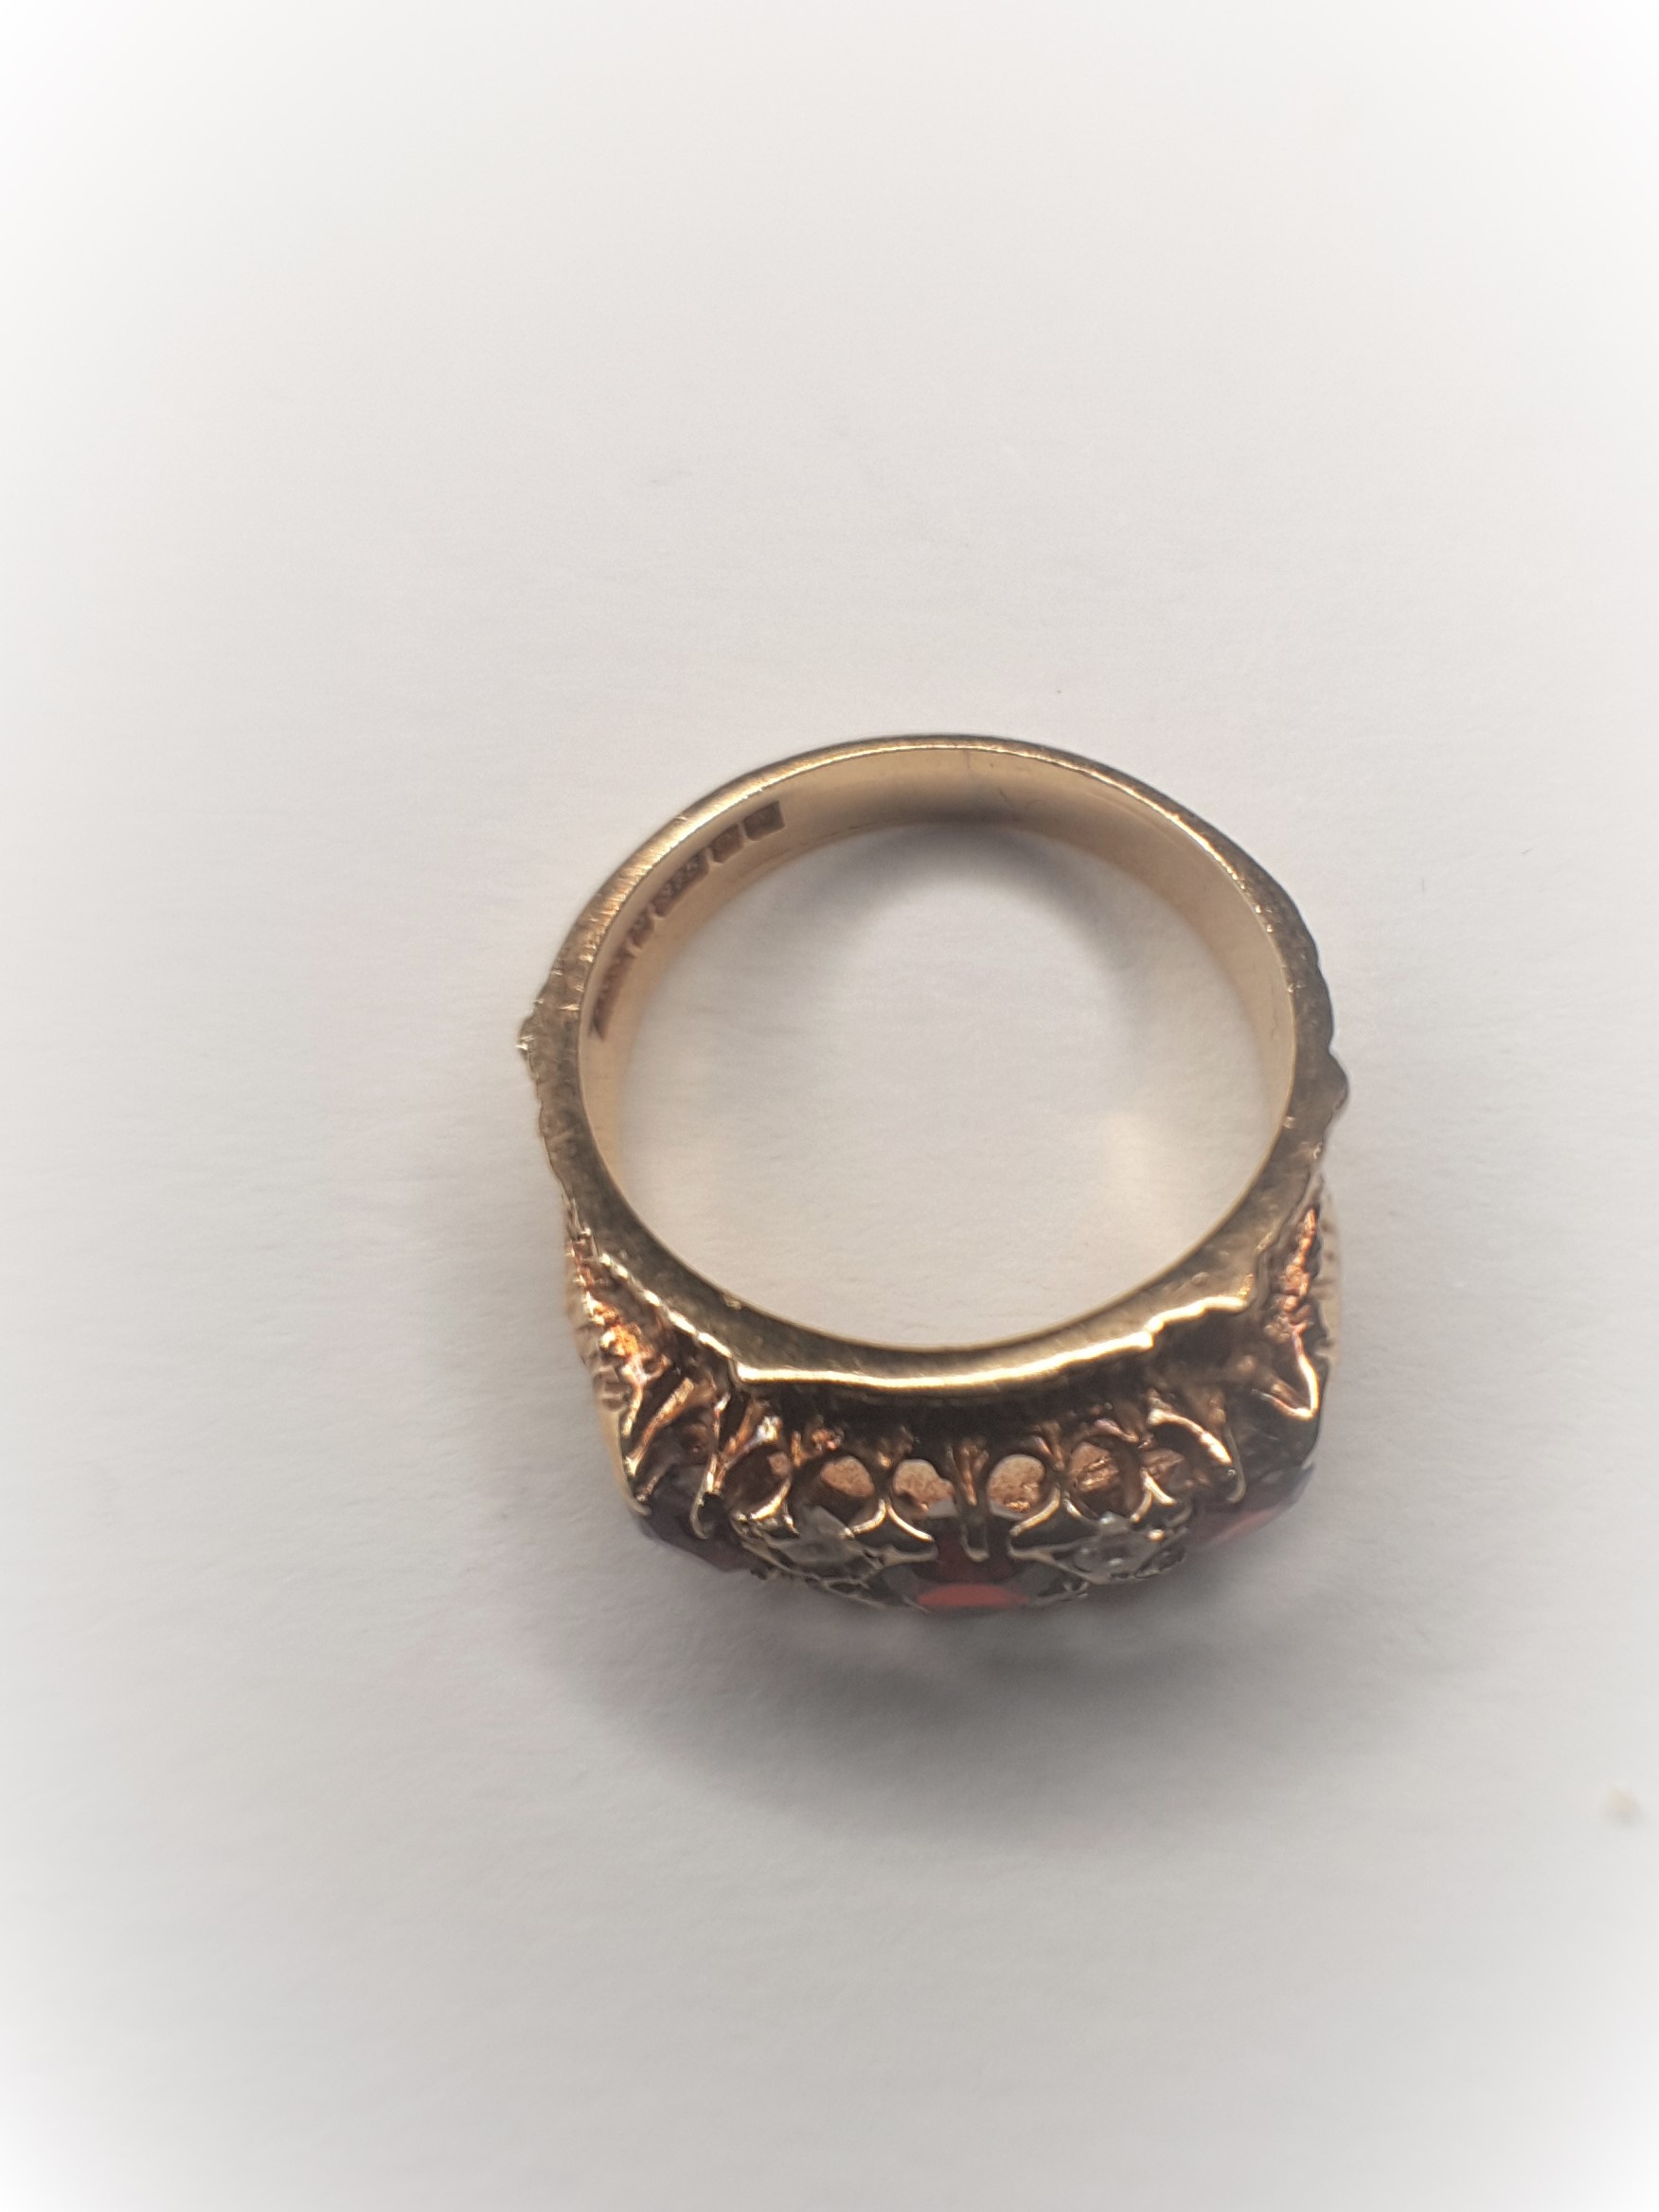 9Ct Yellow Gold Garnet Ring - Image 3 of 6